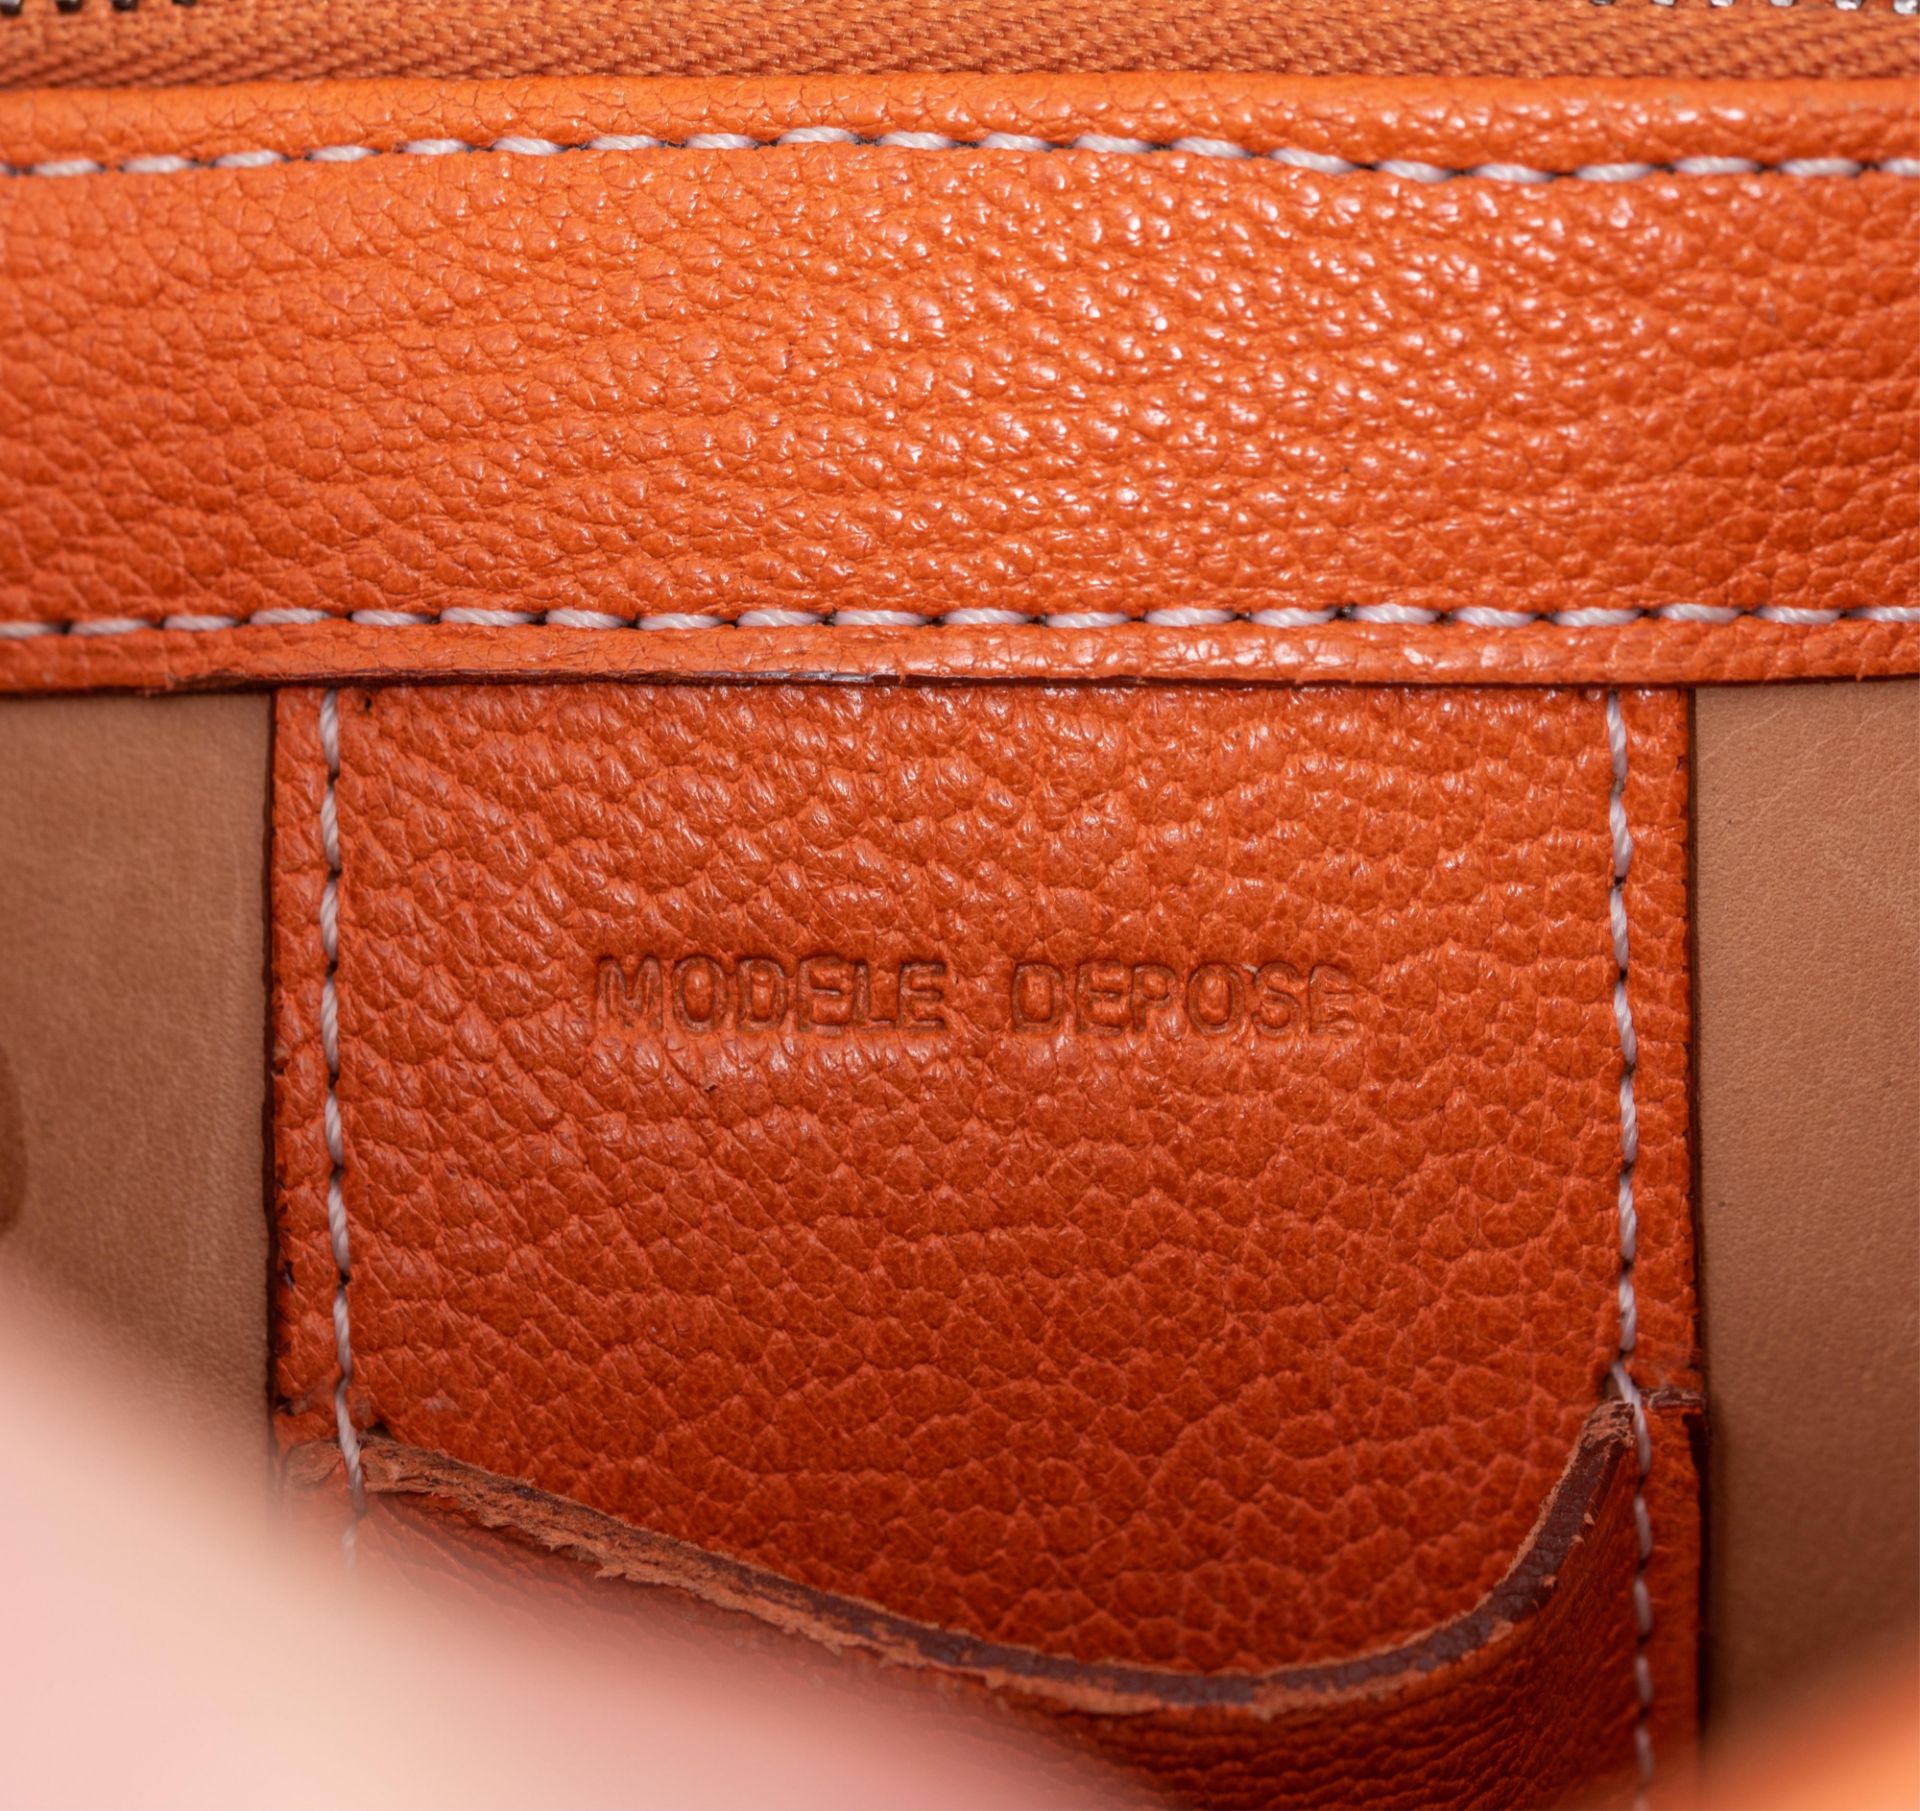 An orange leather Delvaux Brillant MM handbag, H 22 - W 29 cm - D 14,5 cm - Image 17 of 17